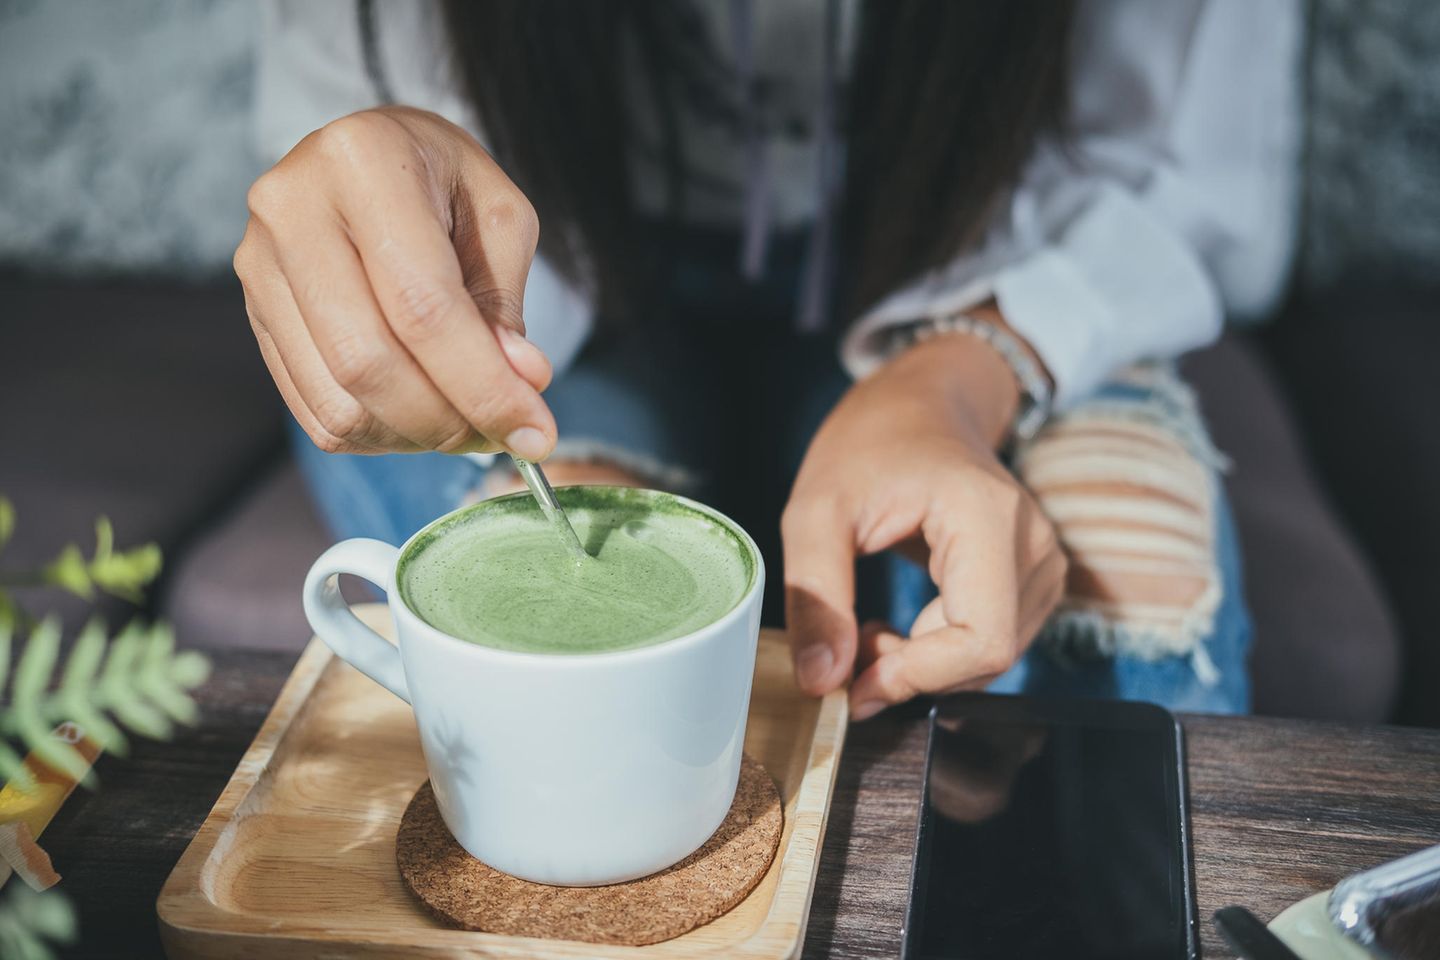 Frau rührt in Matcha-Tee: Diese 5 gesunden Lebensmittel sind im Übermaß ungesund